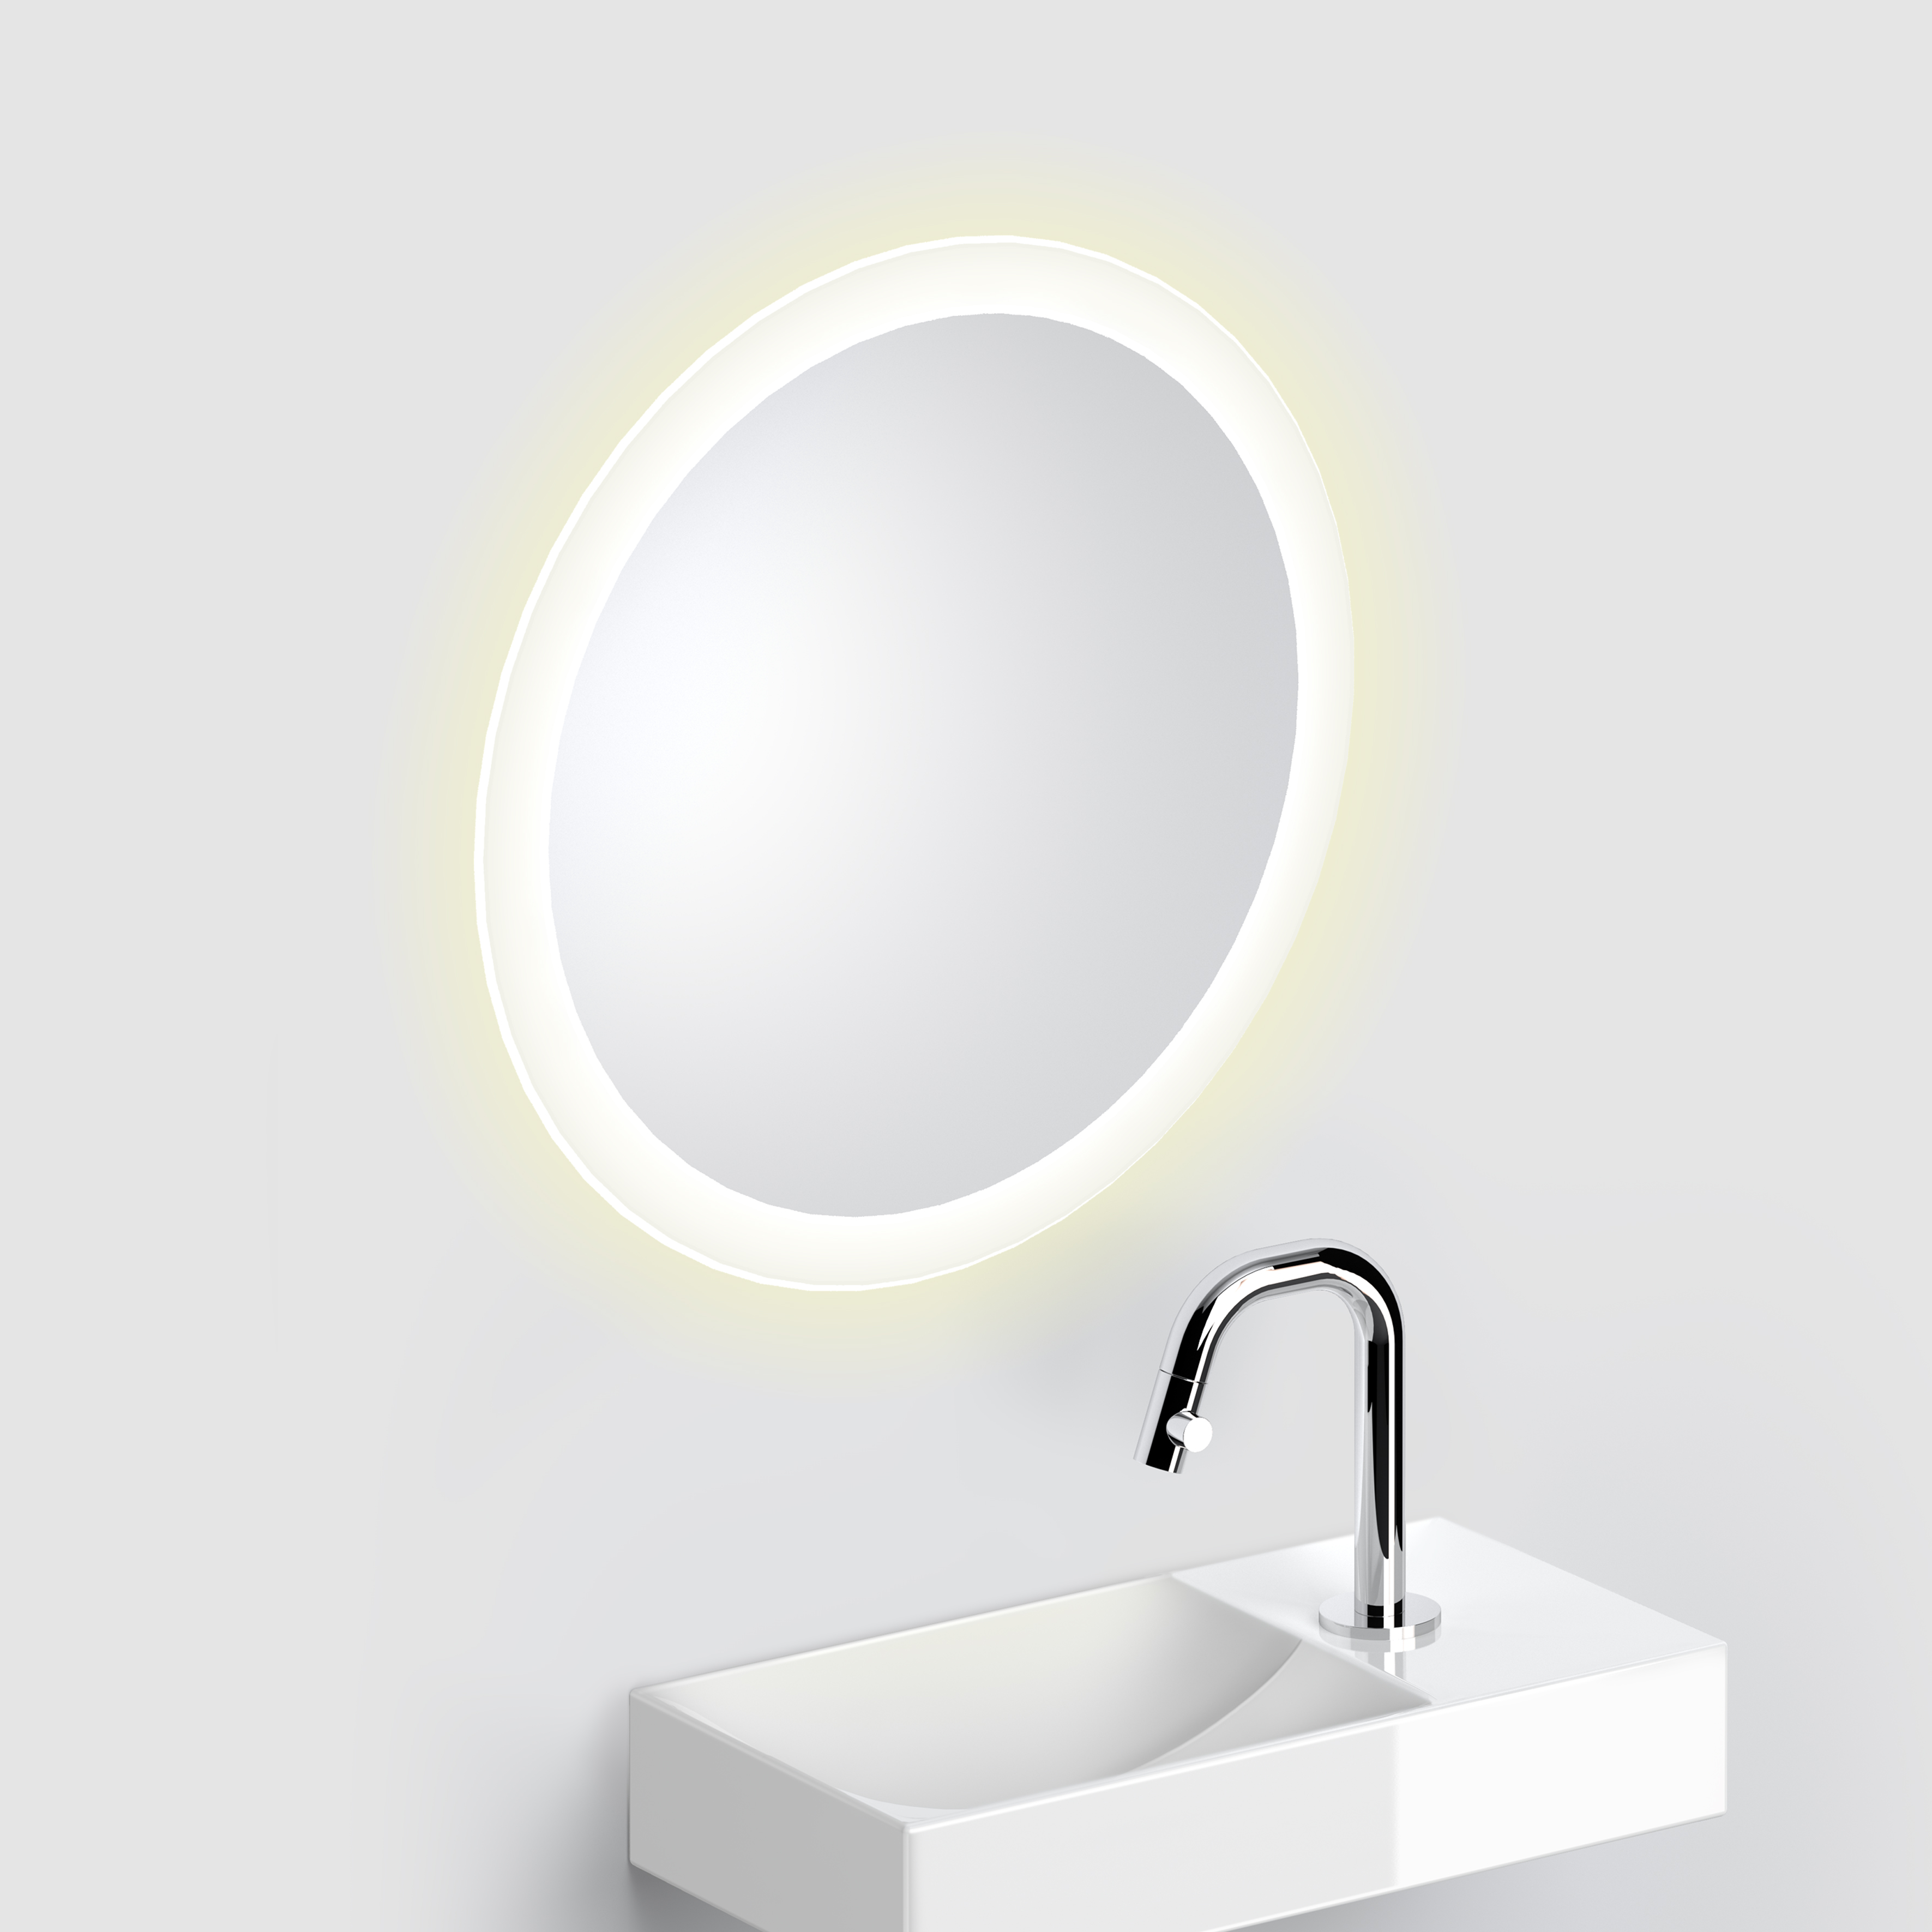 eer mot Tegenover Clou Look at Me spiegel 40cm LED-verlichting IP44 satijnrand  CL/08.07.040.04 > Look at Me spiegels met verlichting > Clou > Sanitair >  Sanispecials.nl | Echt alles voor je badkamer, toilet & keuken!